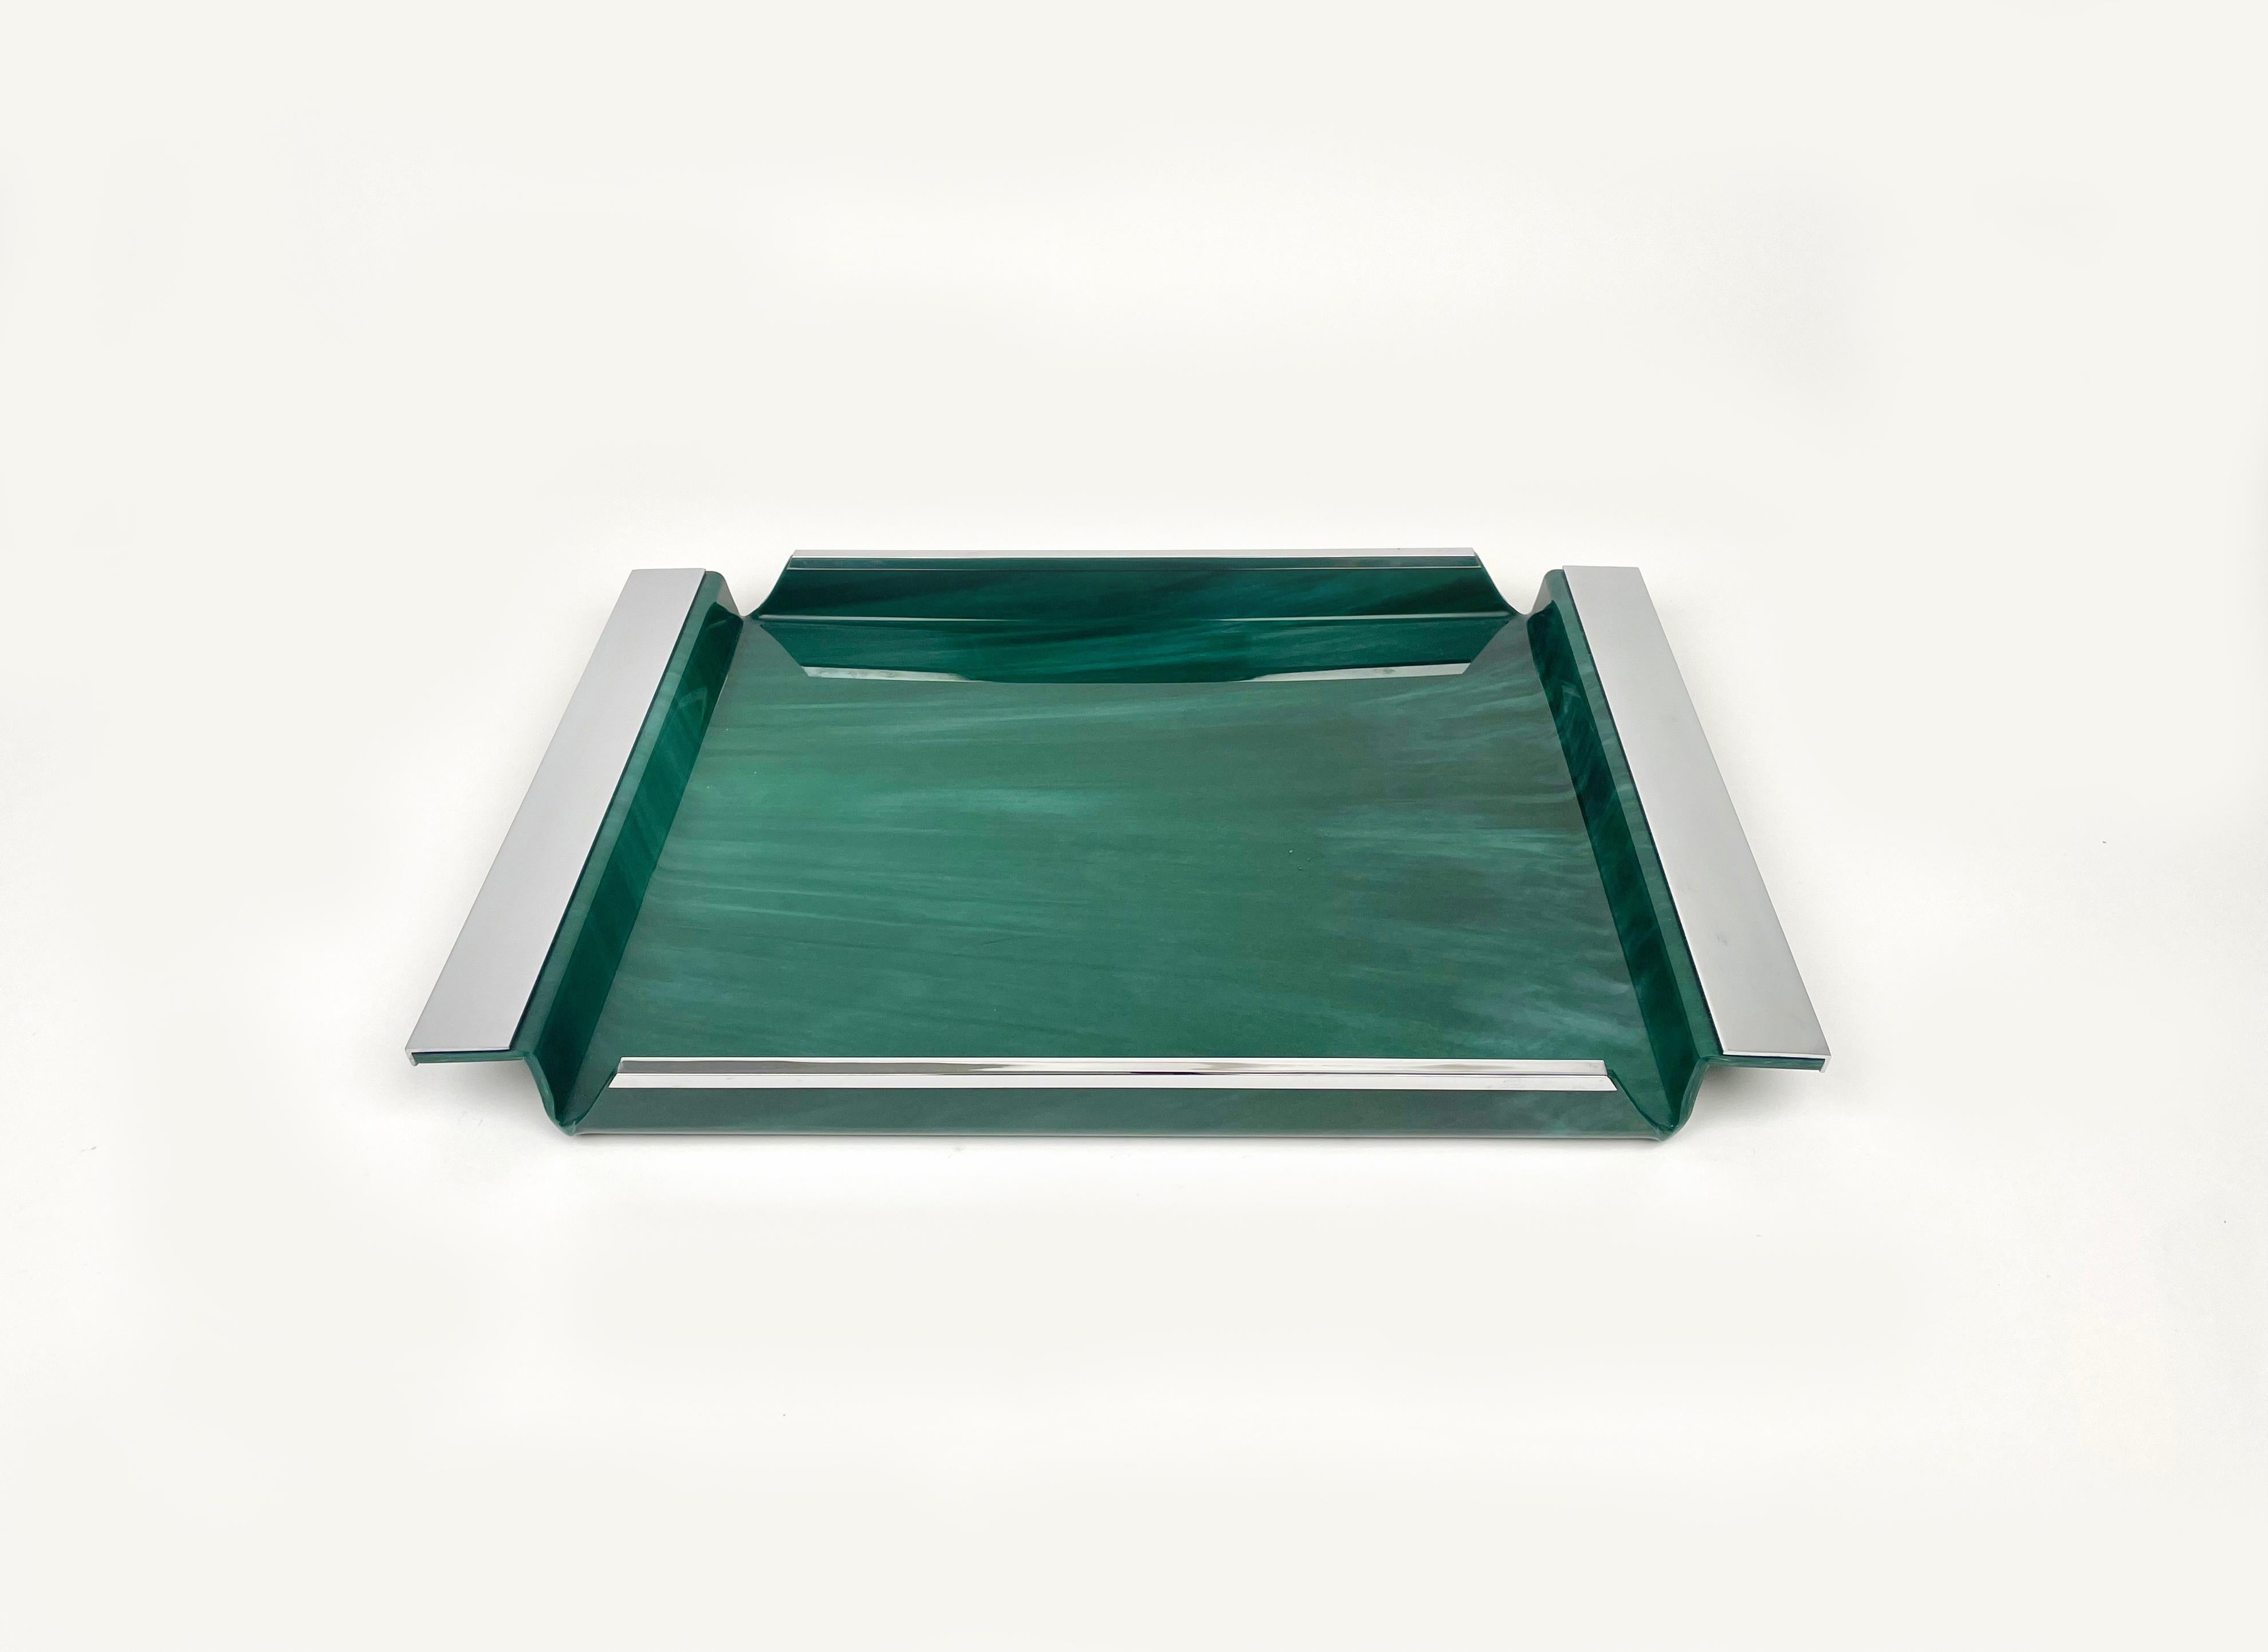 Étonnant plateau de service rectangulaire Acrylique vert effet marbre et chrome dans le style du design italien Willy Rizzo.

Fabriqué en Italie dans les années 1970.